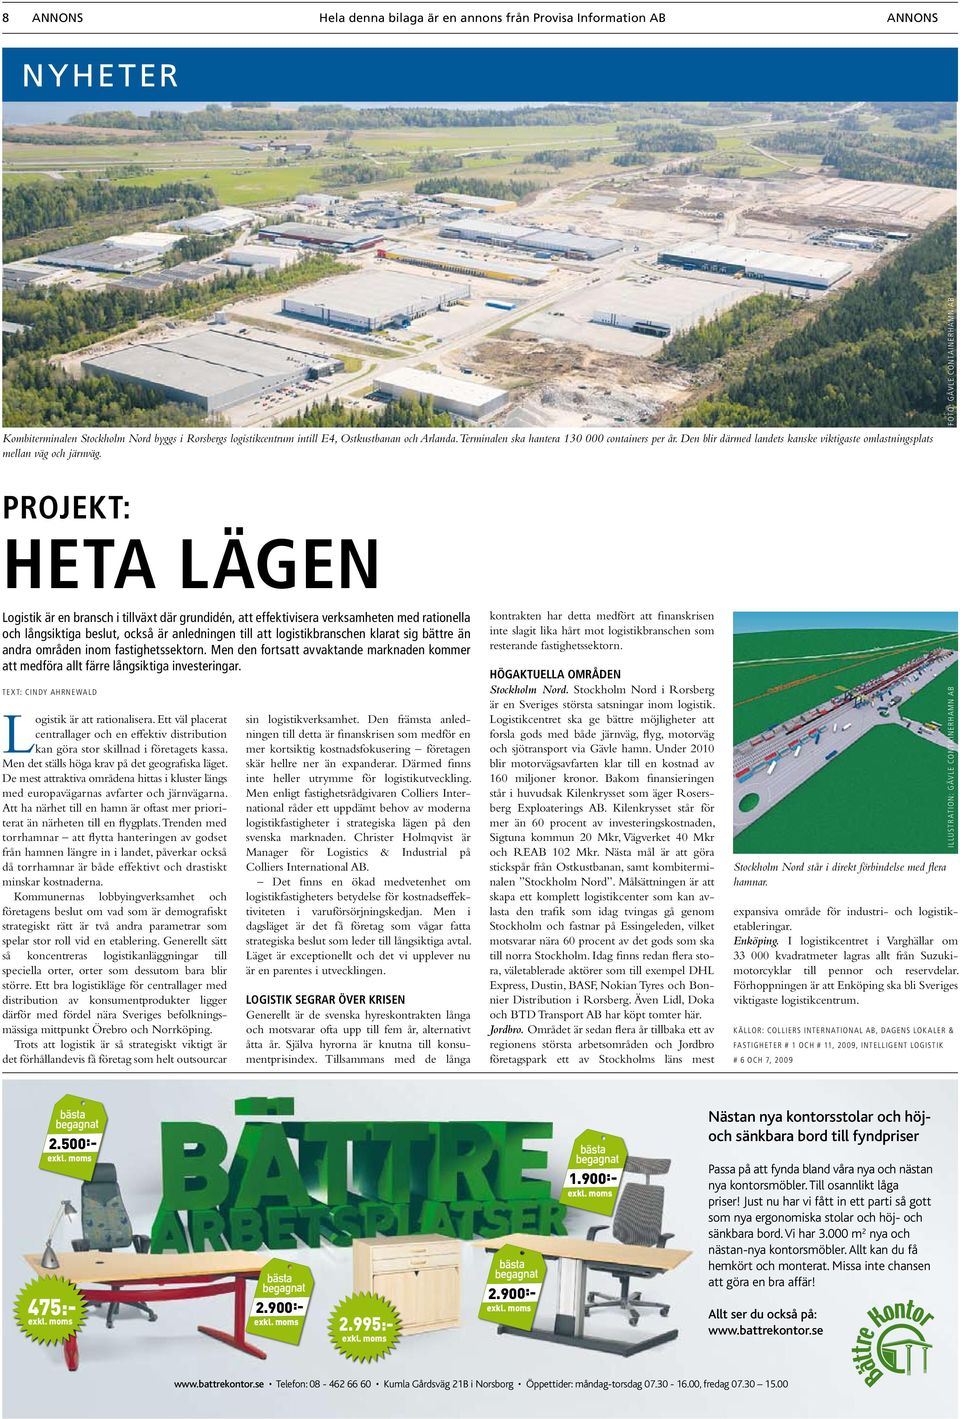 Foto: Gävle Containerhamn AB Projekt: Heta lägen Logistik är en bransch i tillväxt där grundidén, att effektivisera verksamheten med rationella och långsiktiga beslut, också är anledningen till att